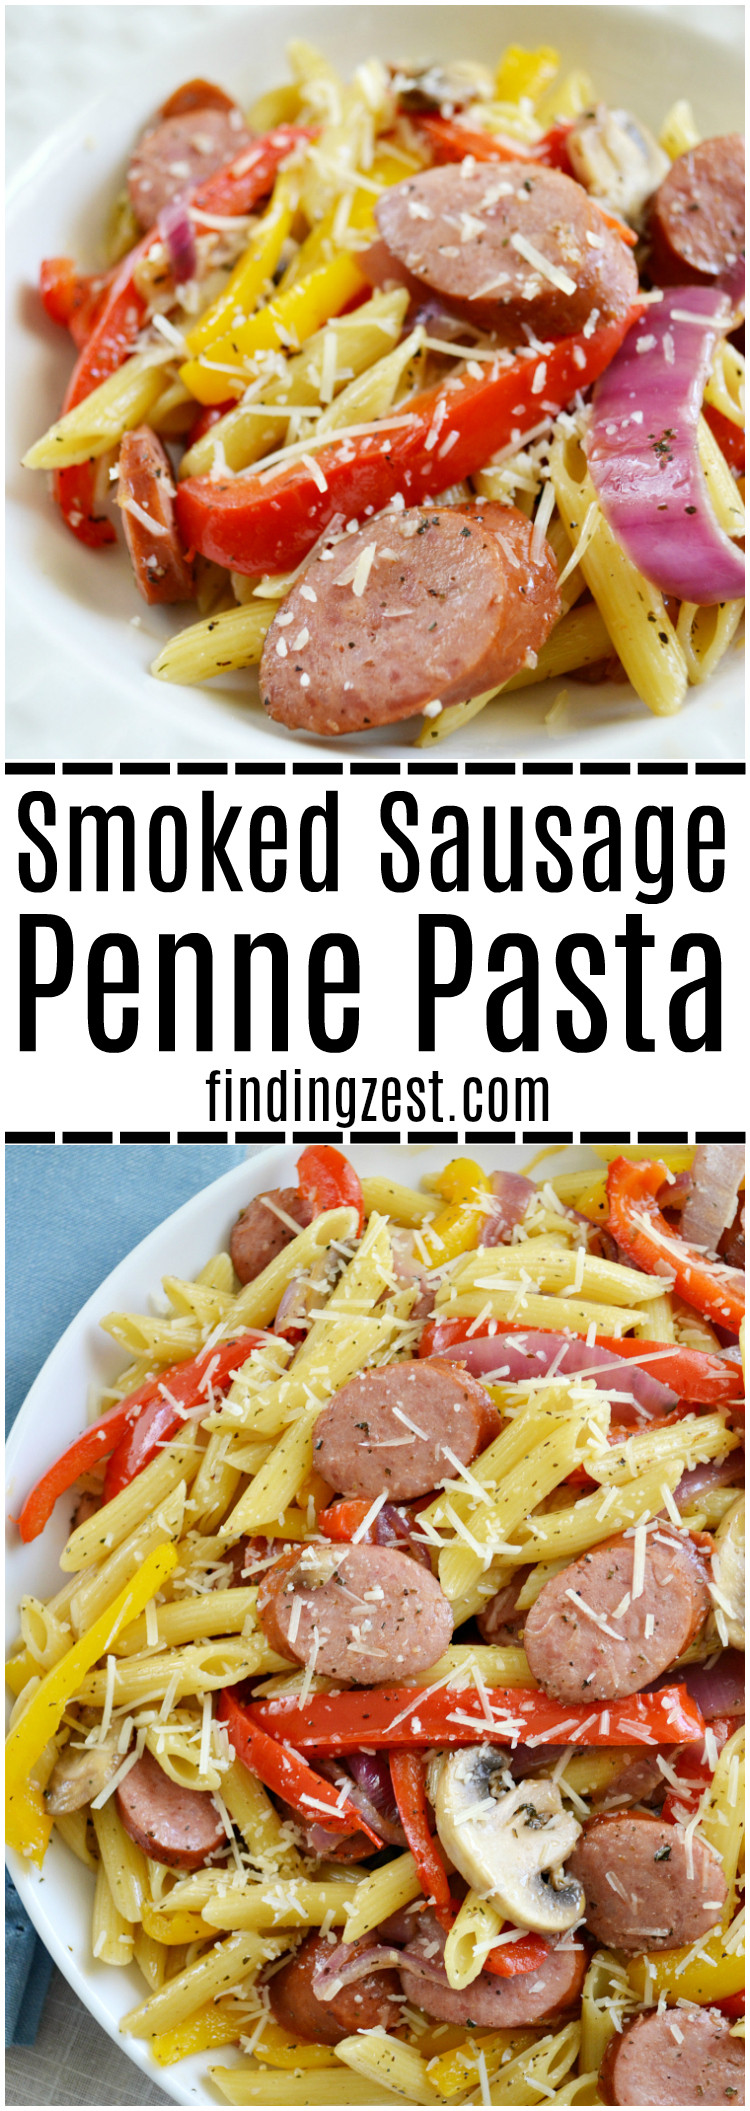 Smoked Sausage Recipes For Dinner
 Smoked Sausage Penne Pasta